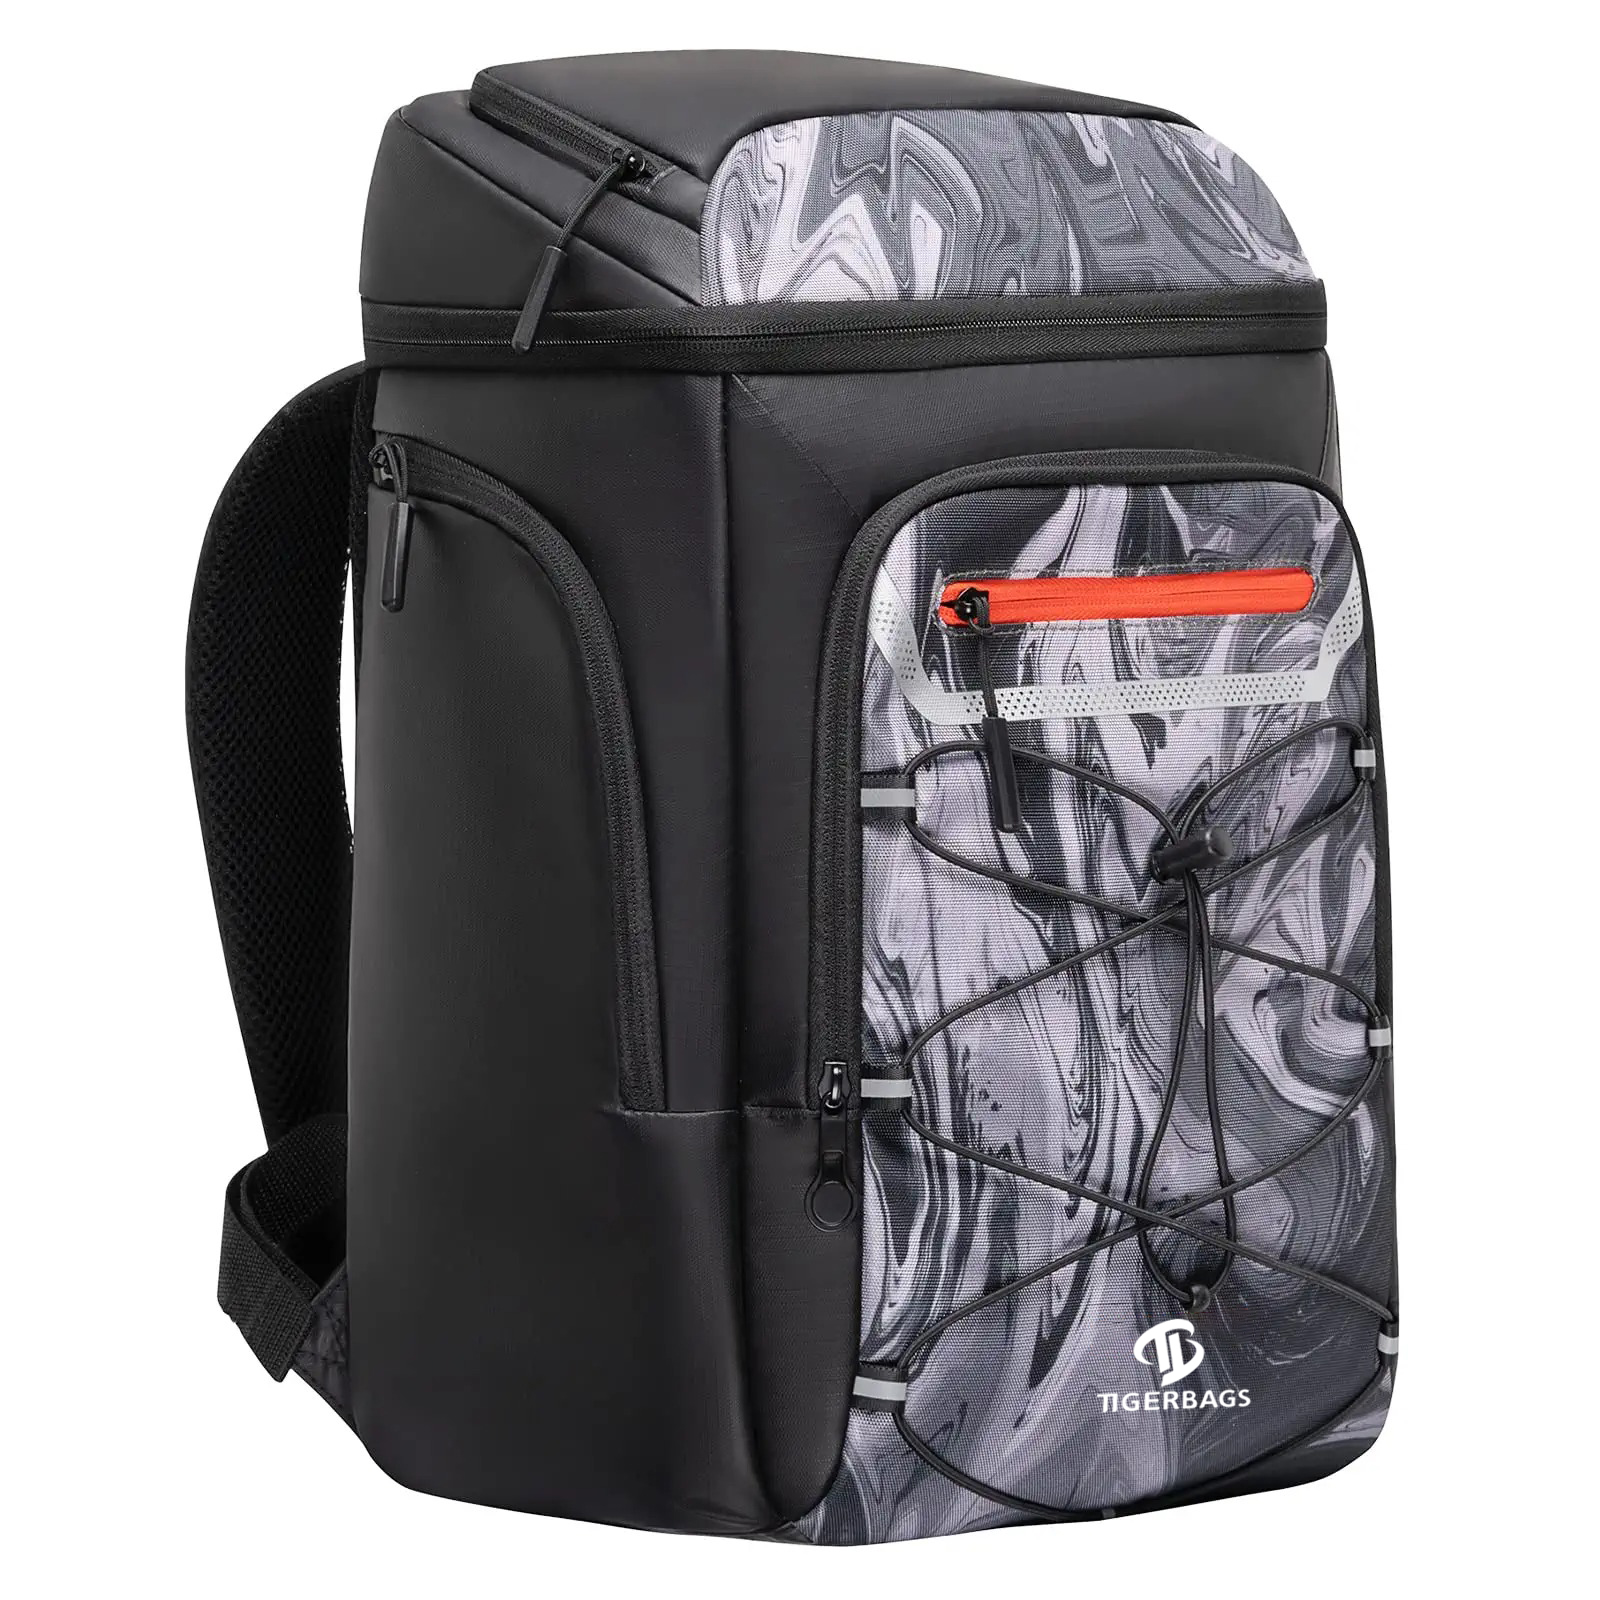 Cooler Backpack Insulation Leak Proof Cooler Bag စိတ်ကြိုက်ပြုလုပ်နိုင်ပါသည်။